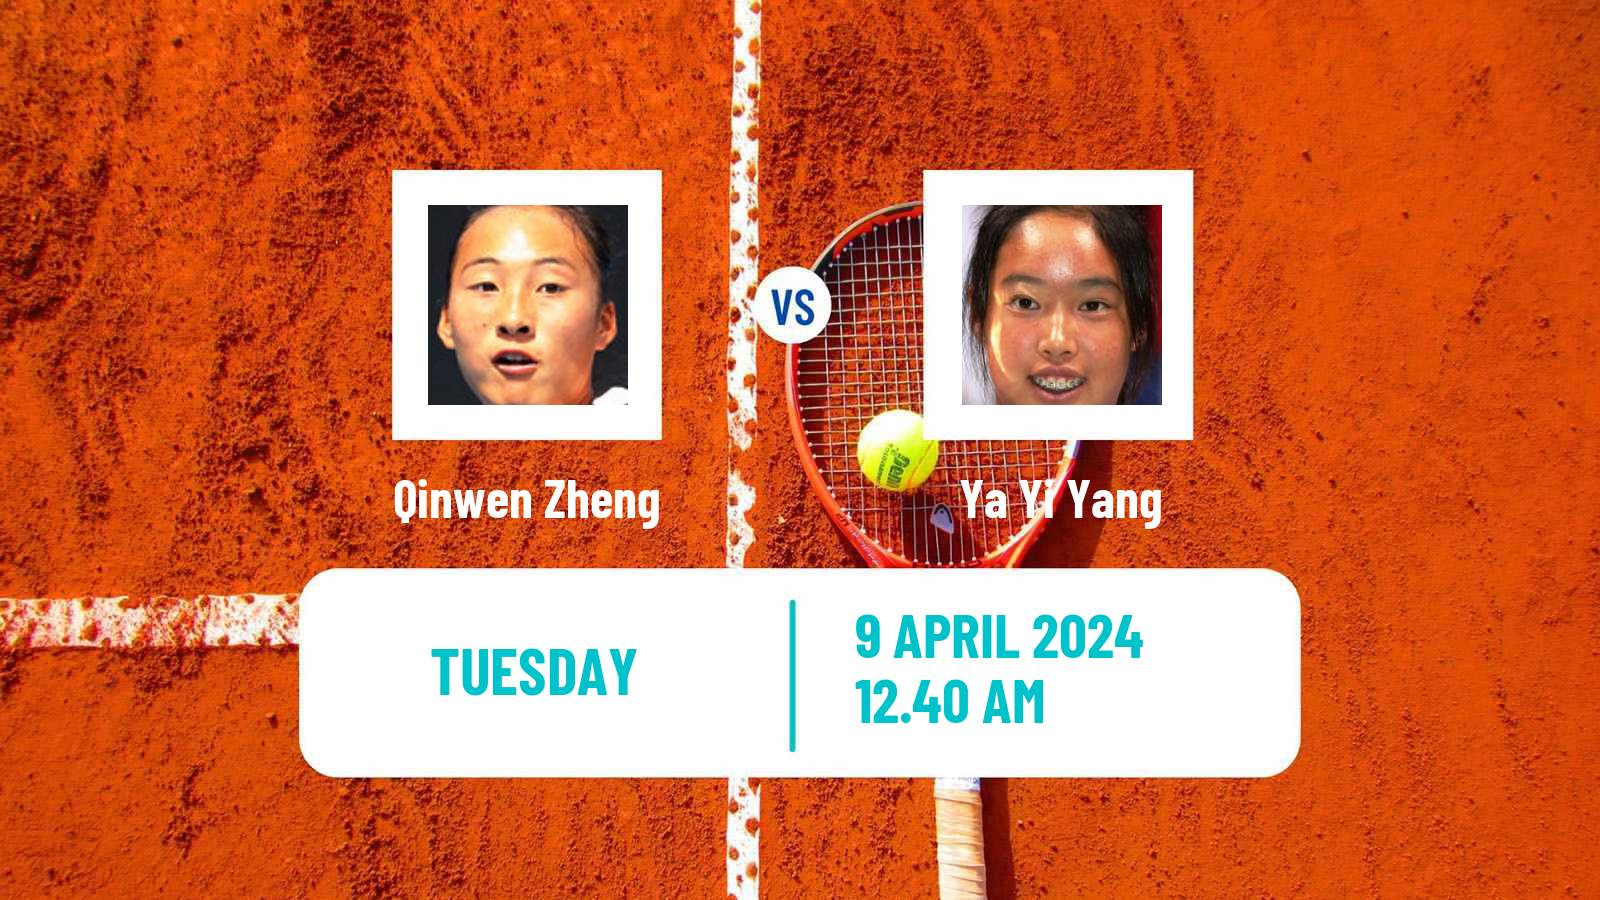 Tennis WTA Billie Jean King Cup Group I Qinwen Zheng - Ya Yi Yang